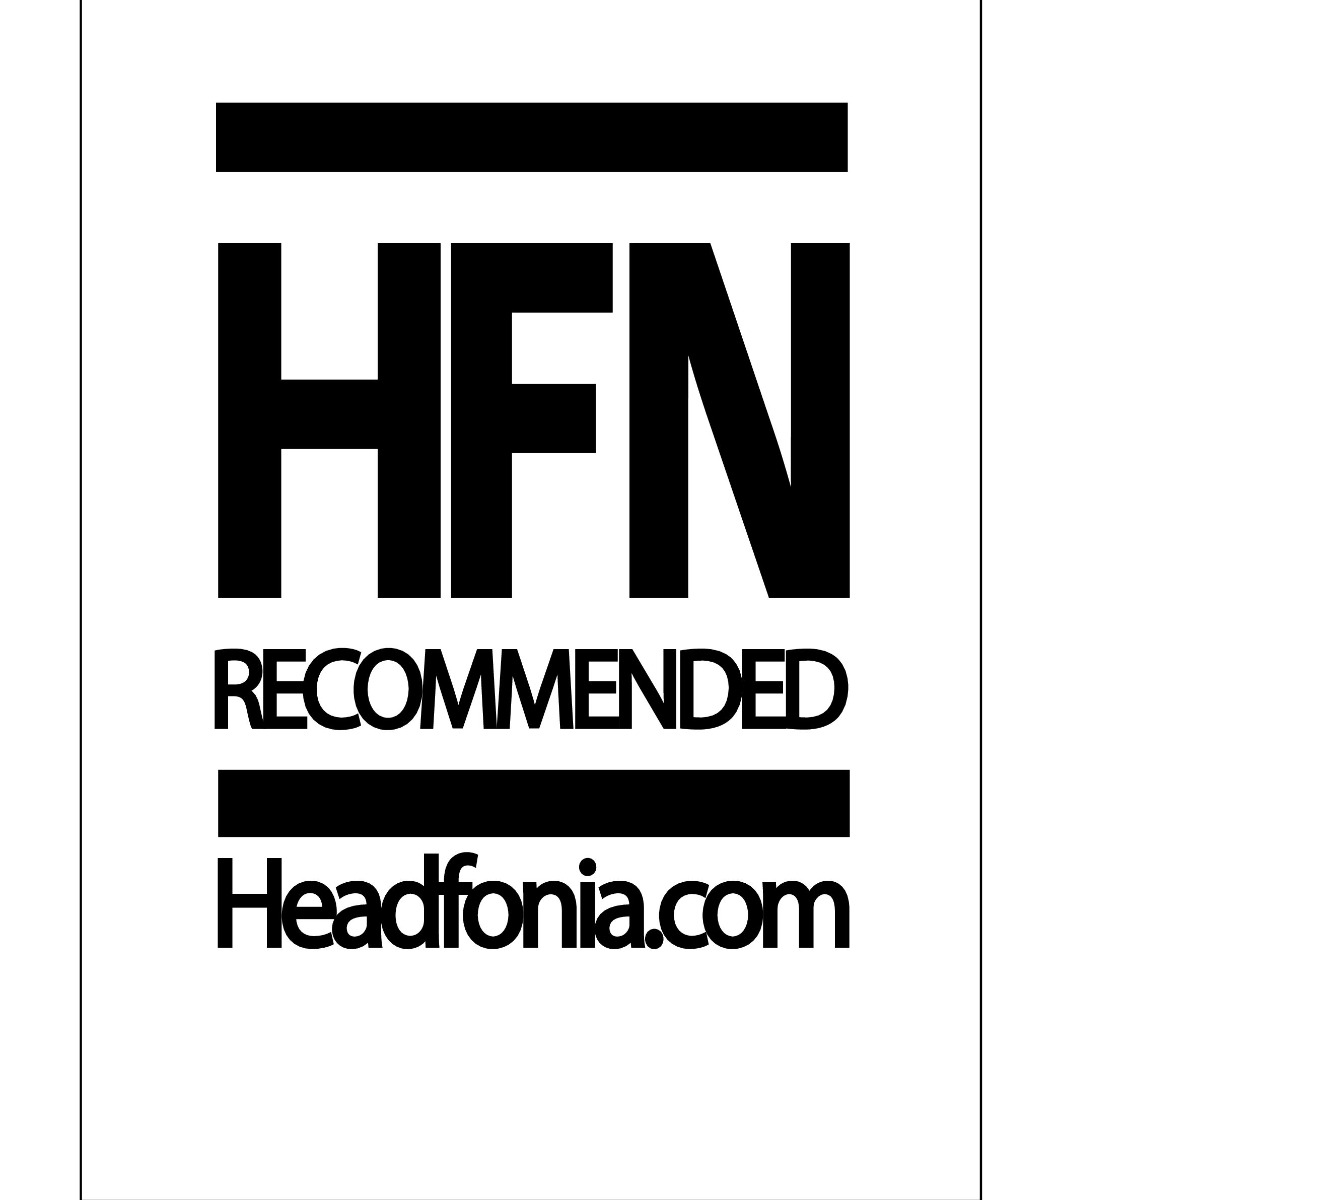 HEADFONIA Logo